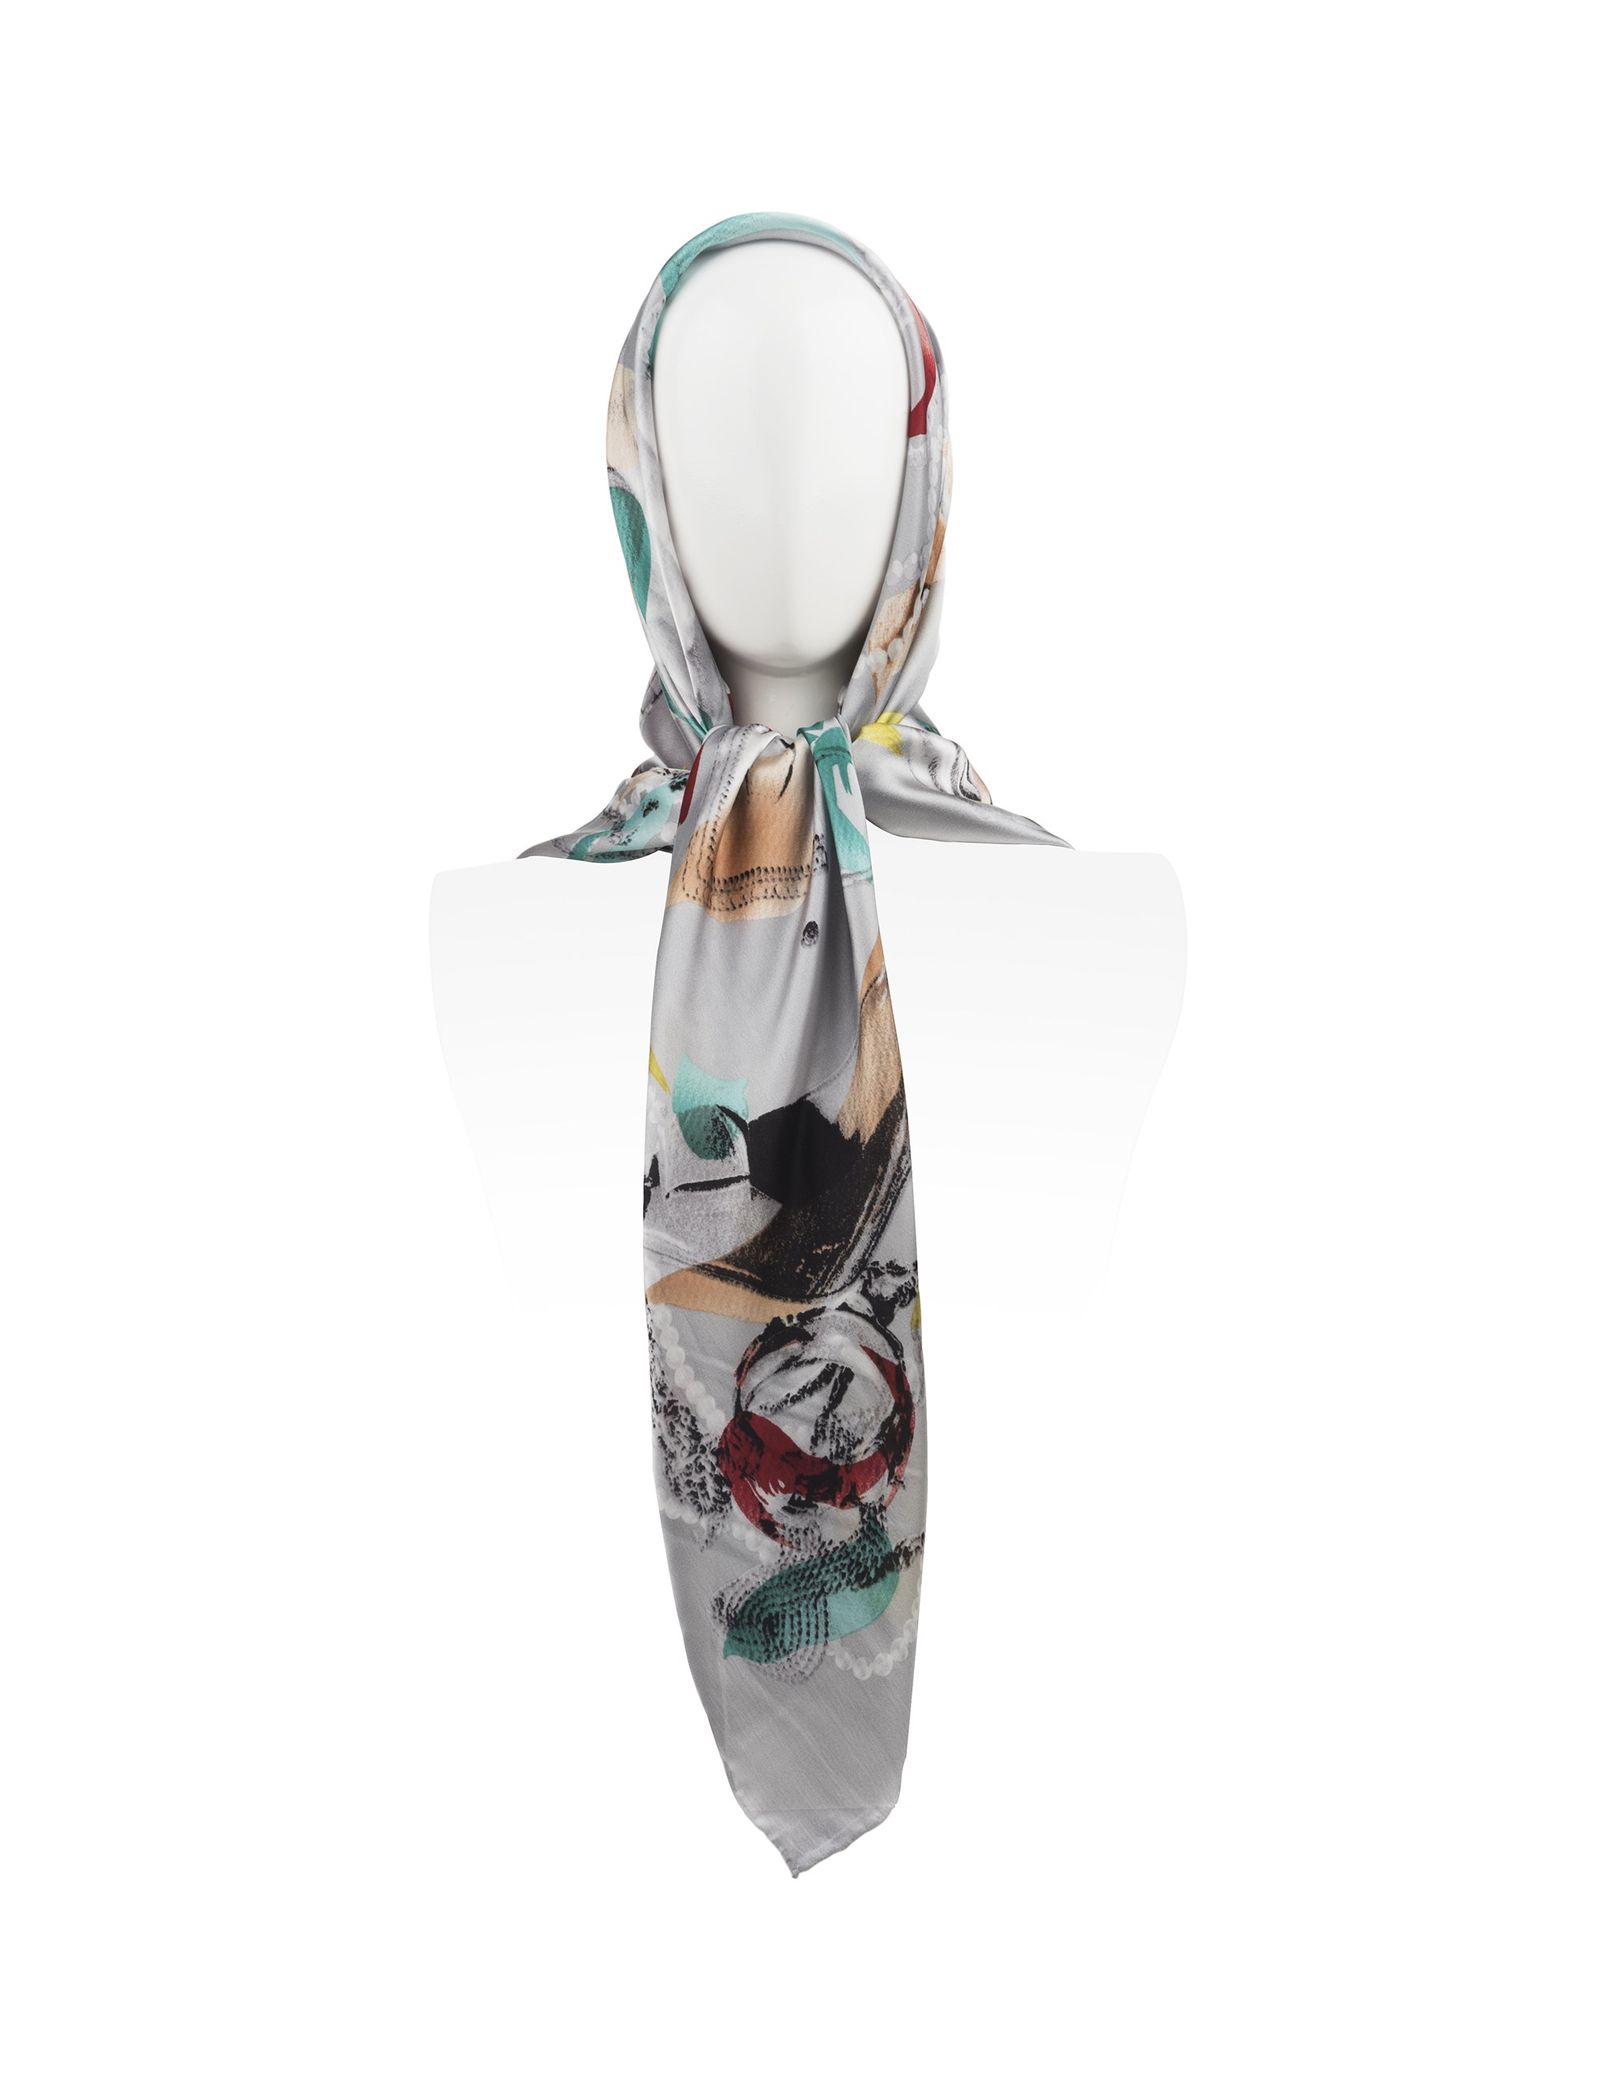 روسری ابریشمی زنانه - رزتی تک سایز - طوسي - 1